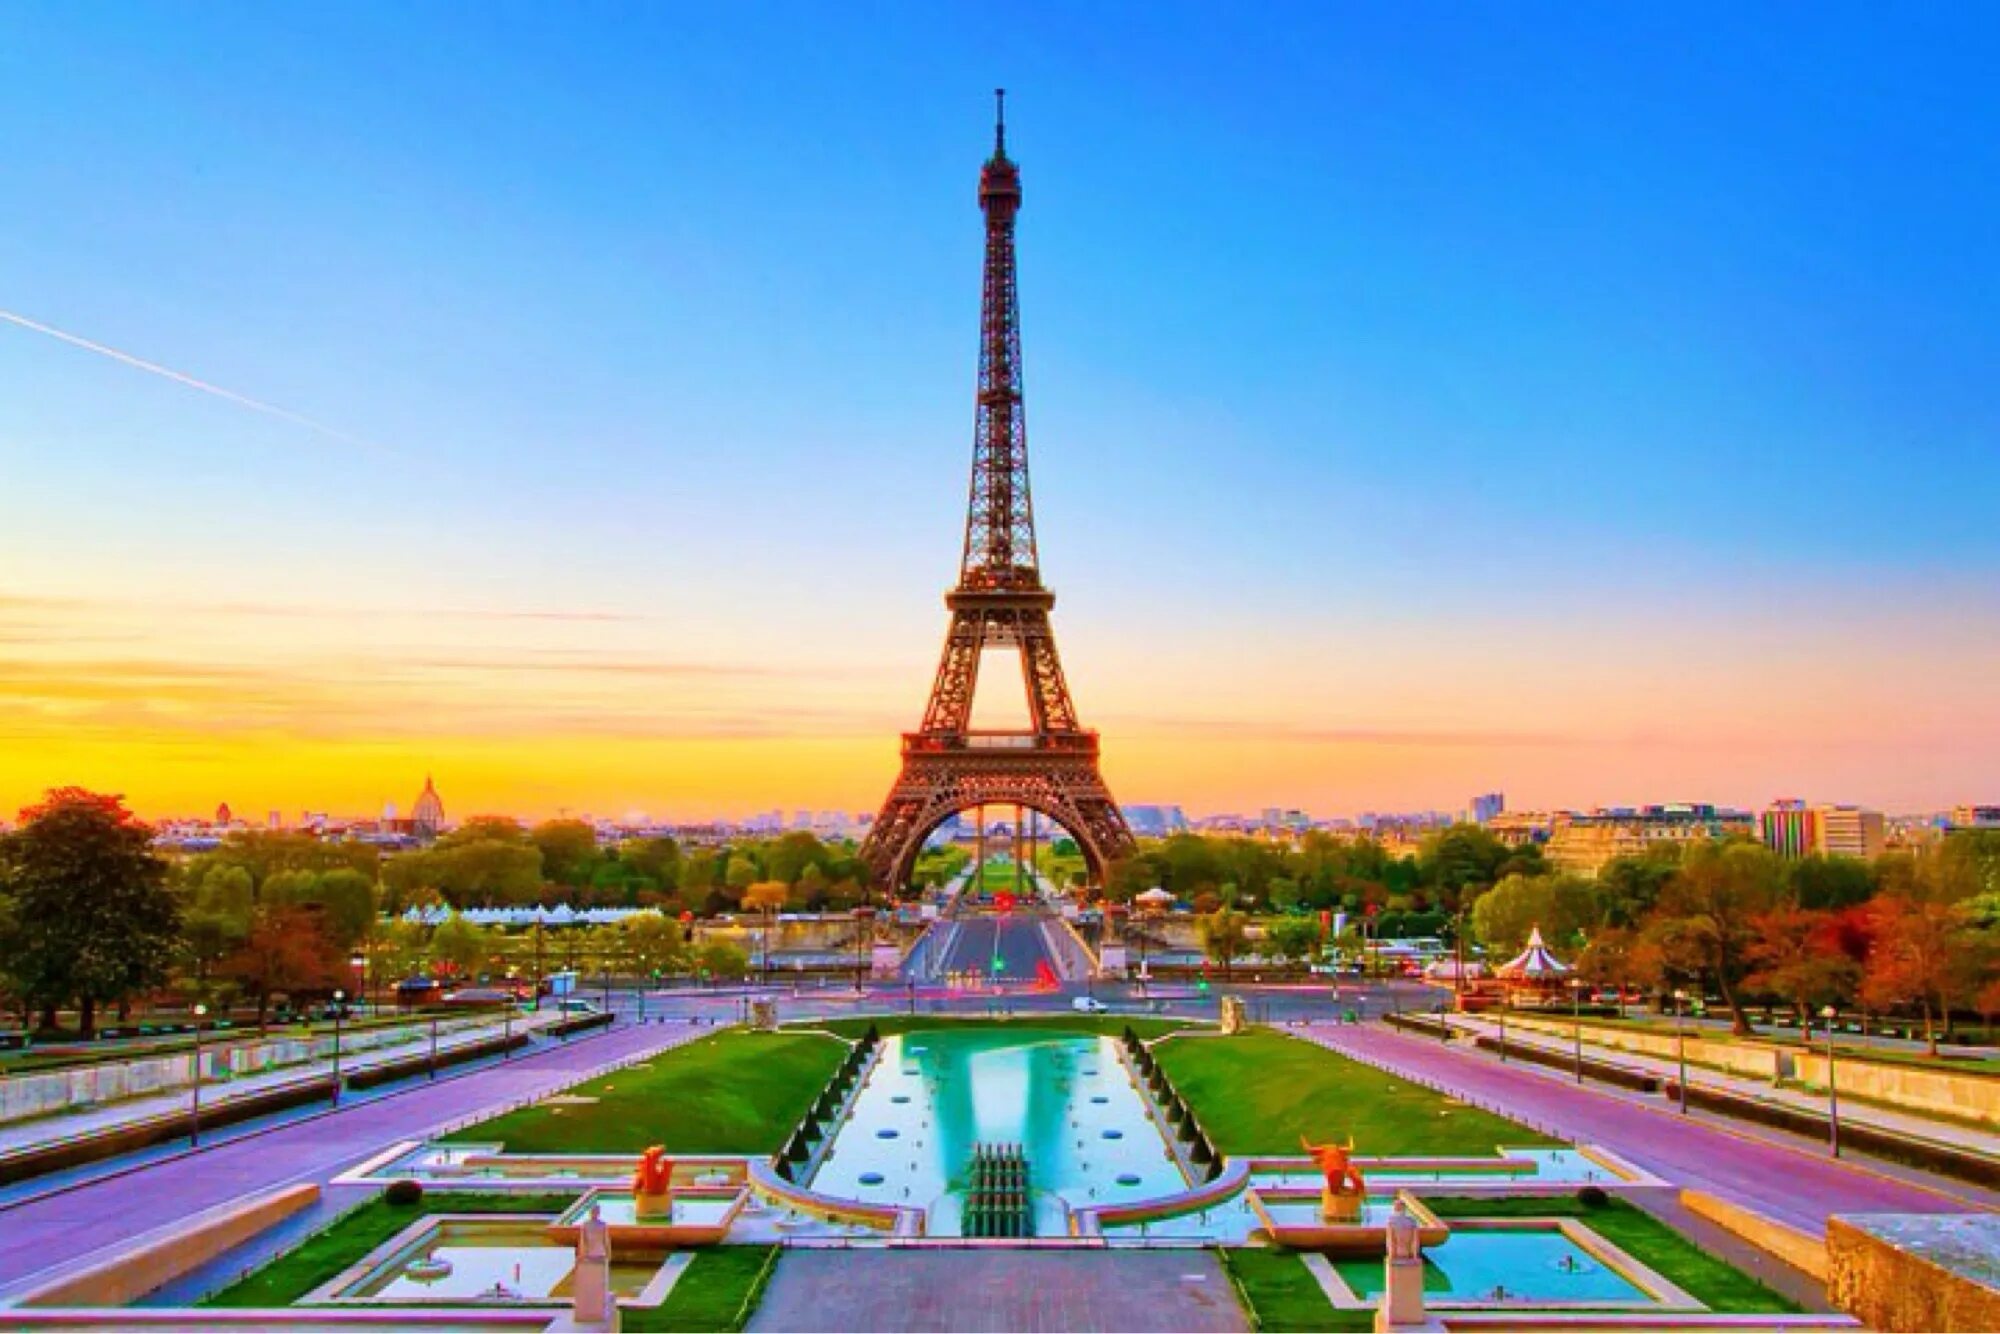 France pictures. Париж Эйфель. Эйфель башня. Эйфель башня Tour Eiffel. Эйфелева башня в Париже -столице Франции.